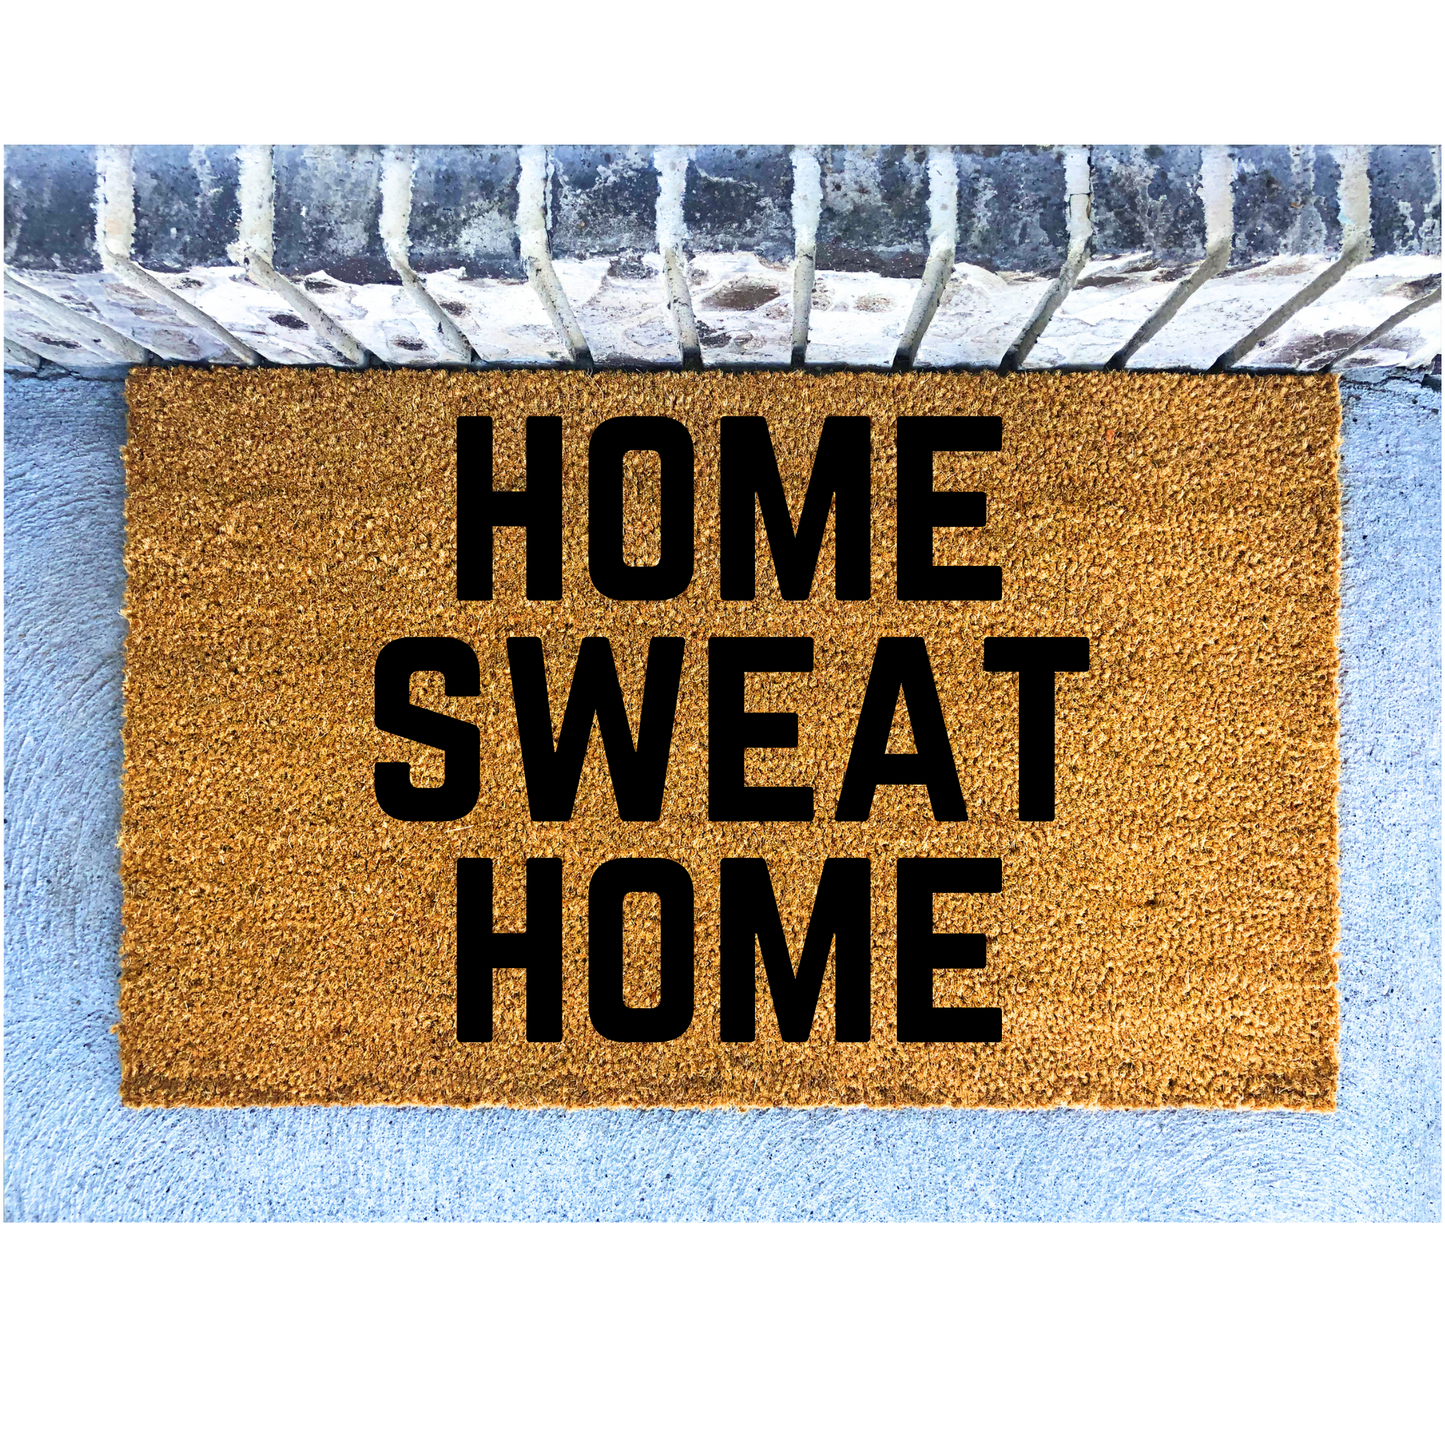 Home Sweat Home doormat